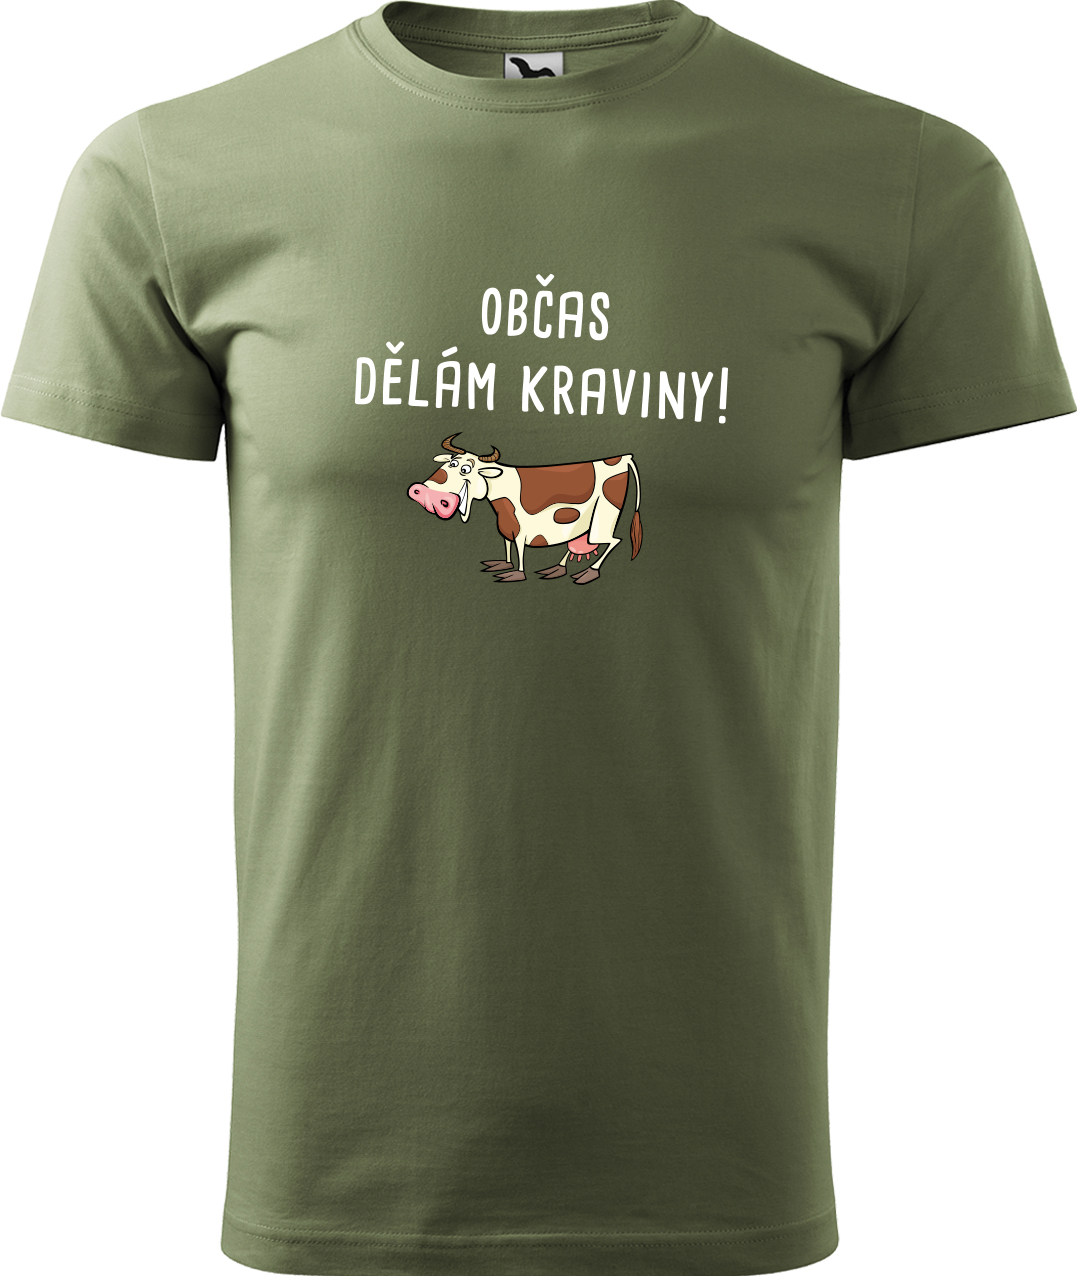 Pánské tričko s krávou - Občas dělám kraviny Velikost: 4XL, Barva: Světlá khaki (28), Střih: pánský